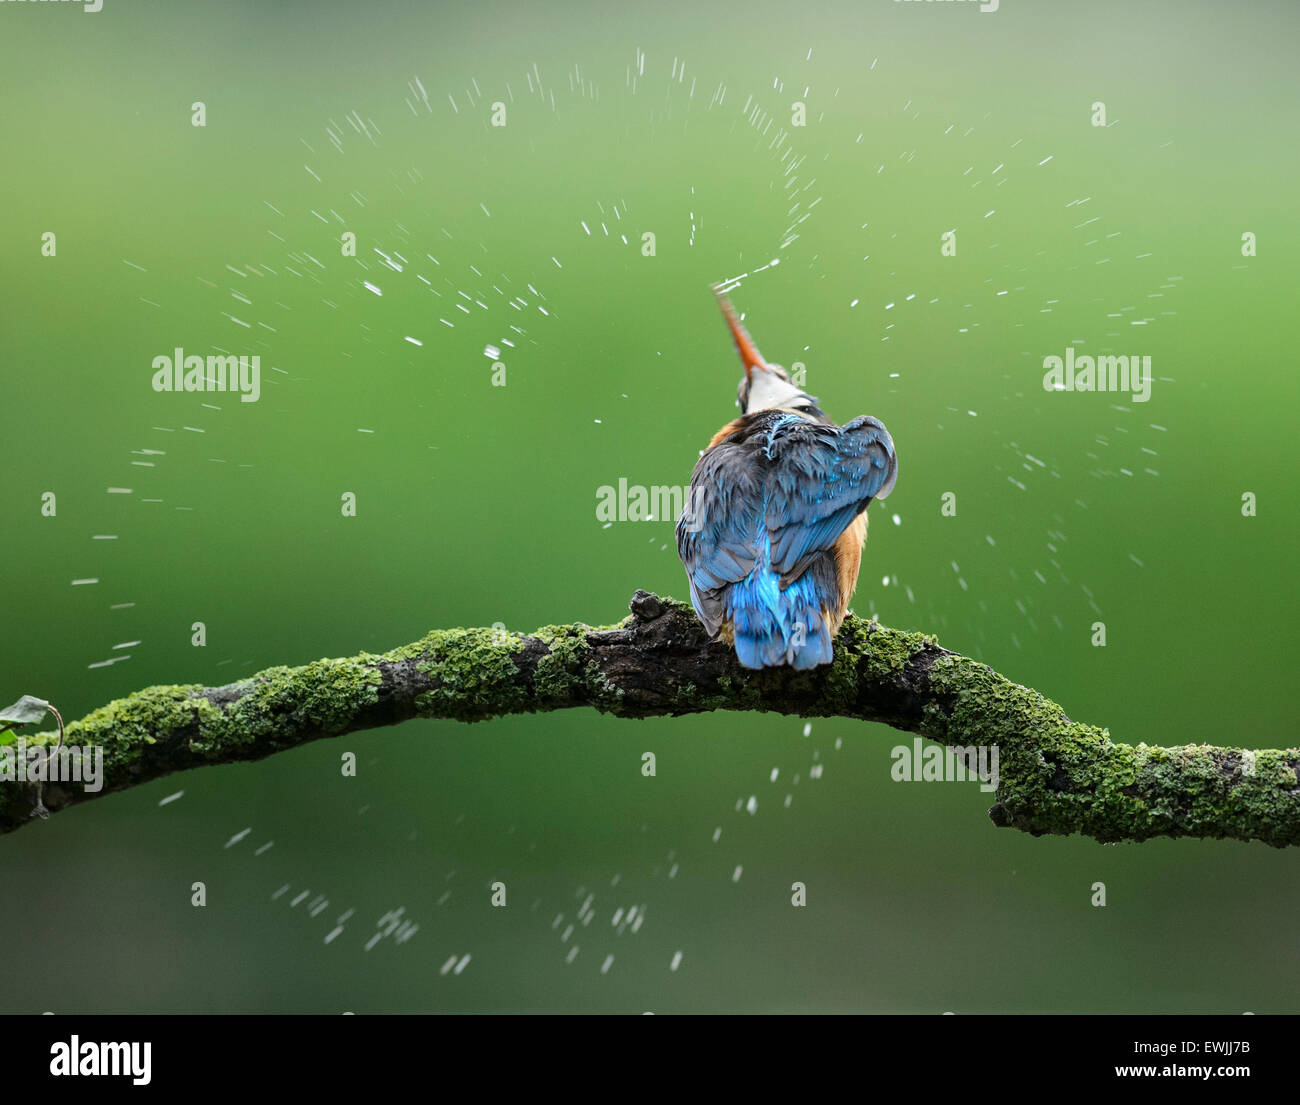 Kingfisher scuotendo le goccioline di acqua off dopo un tuffo nell'acqua. Le gocce di acqua formano un cerchio a causa della veloce rotazione della testa. Foto Stock